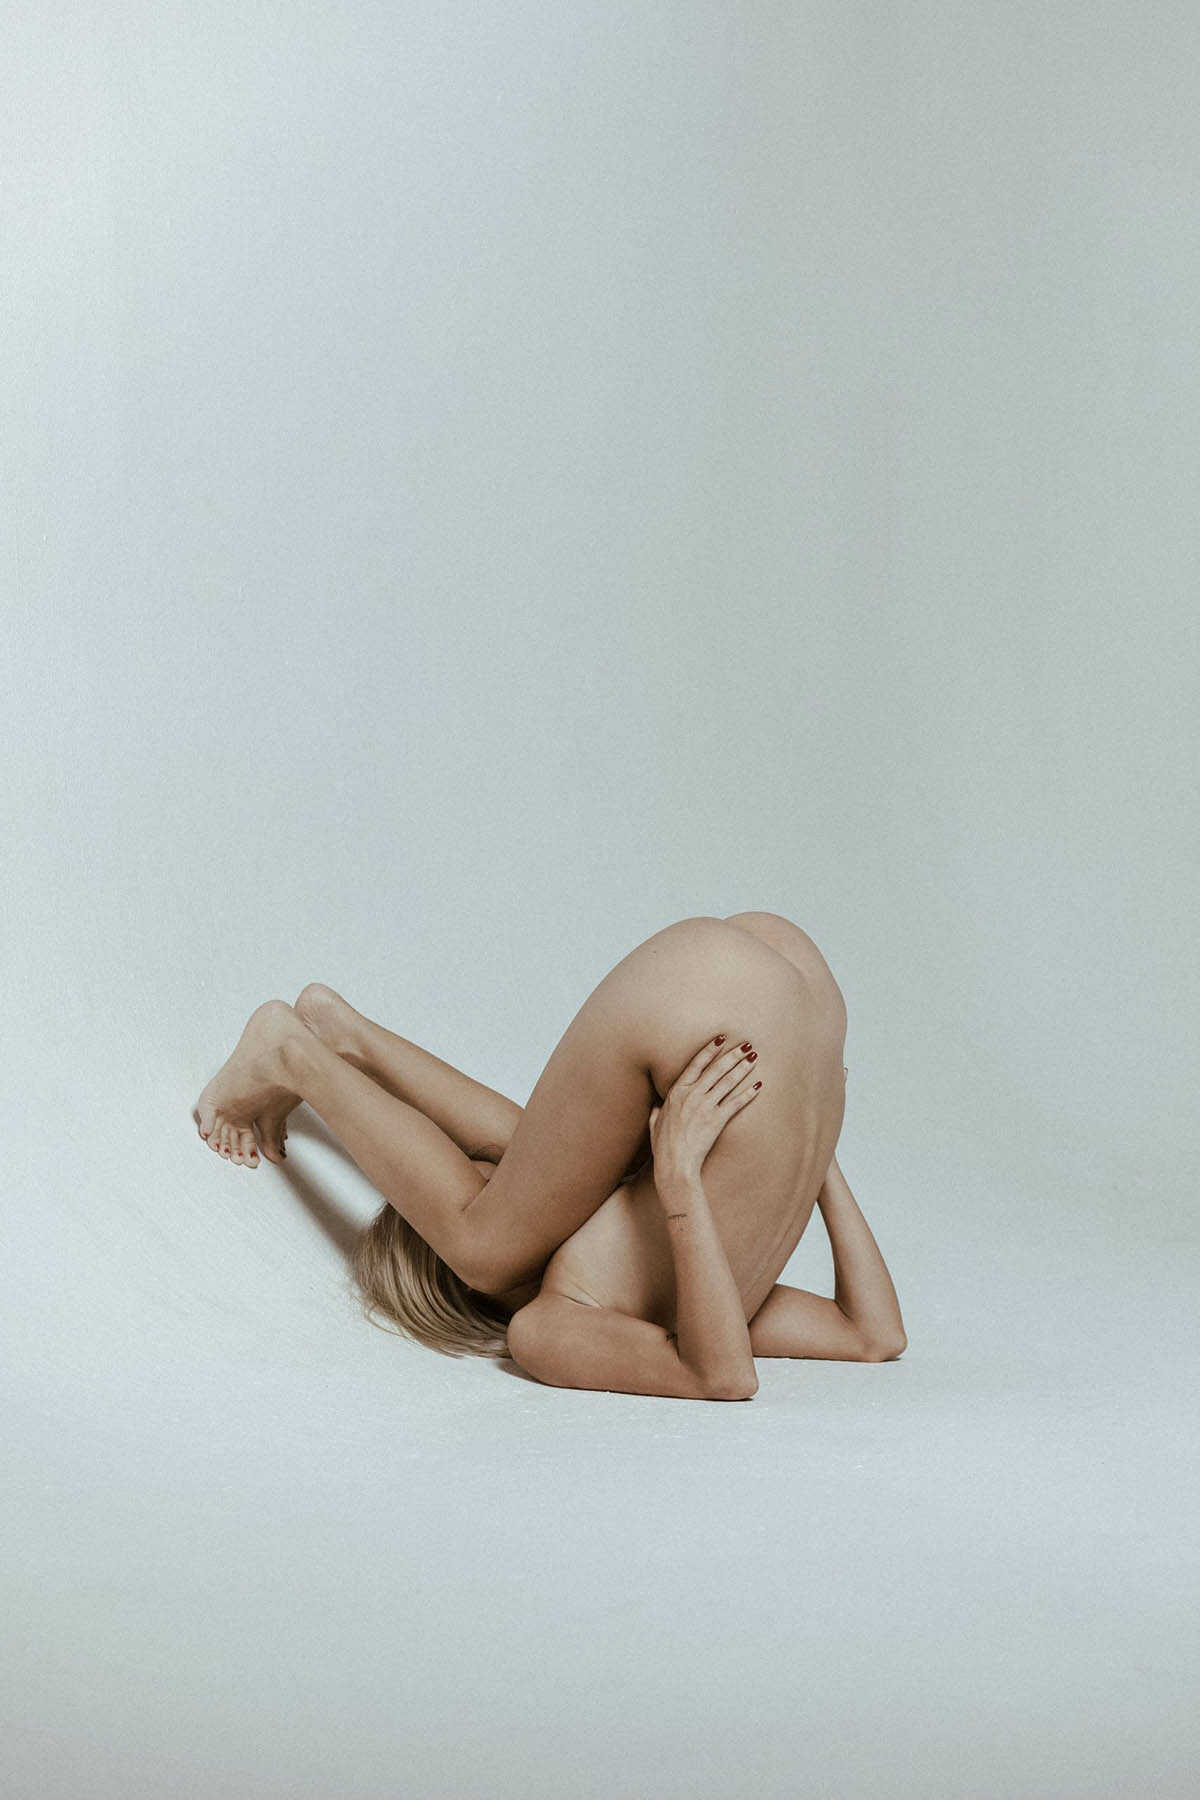 Διαφορετικό γυμνό με την Maria Fernanda Brenes Loaiza